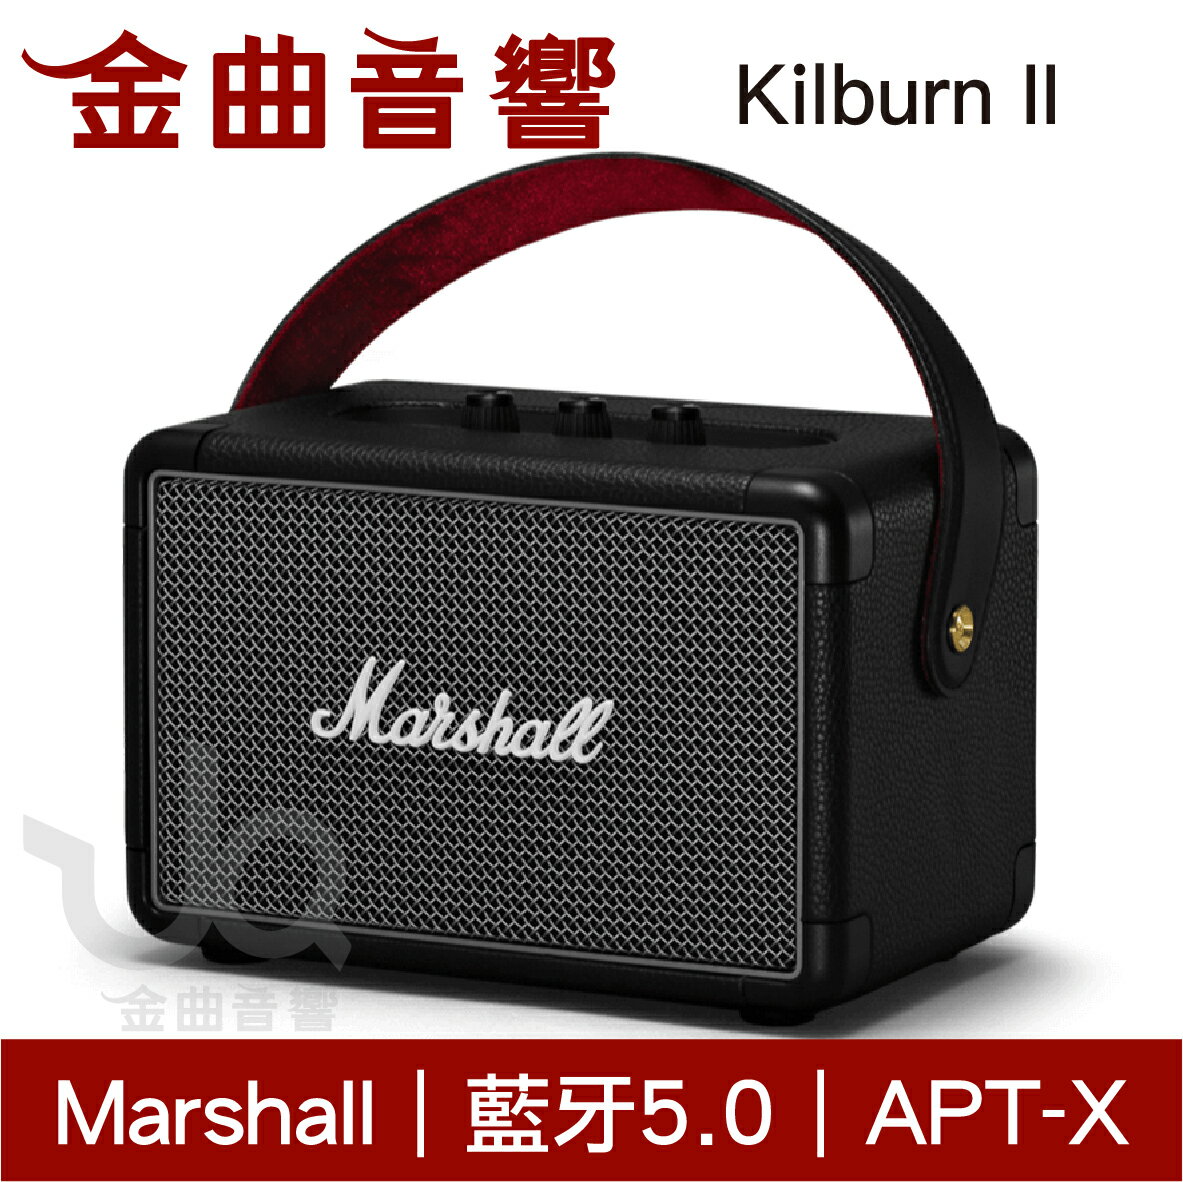 Marshall Kilburn II 無線 藍芽 便攜 喇叭 手提式音響 | 金曲音響